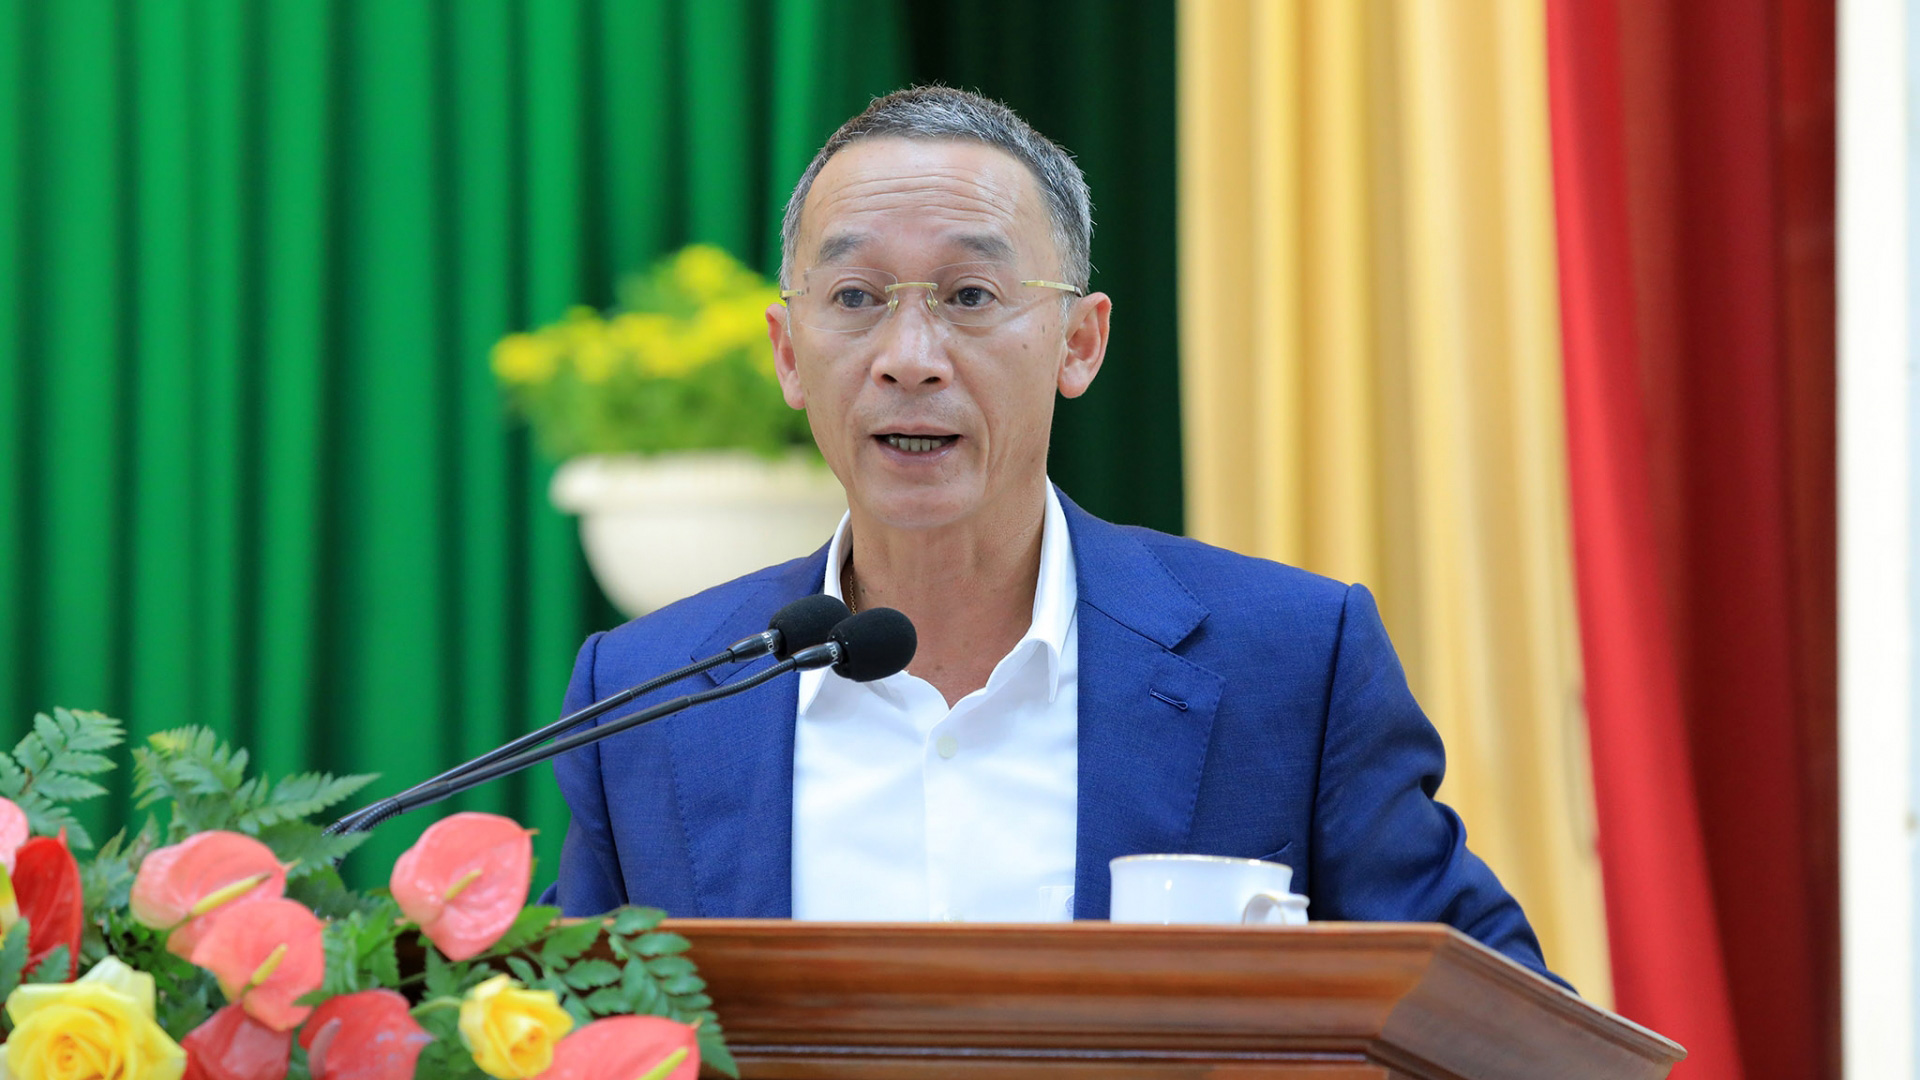 Chủ tịch UBND tỉnh Lâm Đồng Trần Văn Hiệp phát biểu chỉ đạo, đánh giá việc Công an Lâm Đồng triển khai kiện toàn tổ chức bộ máy bên trong lần này